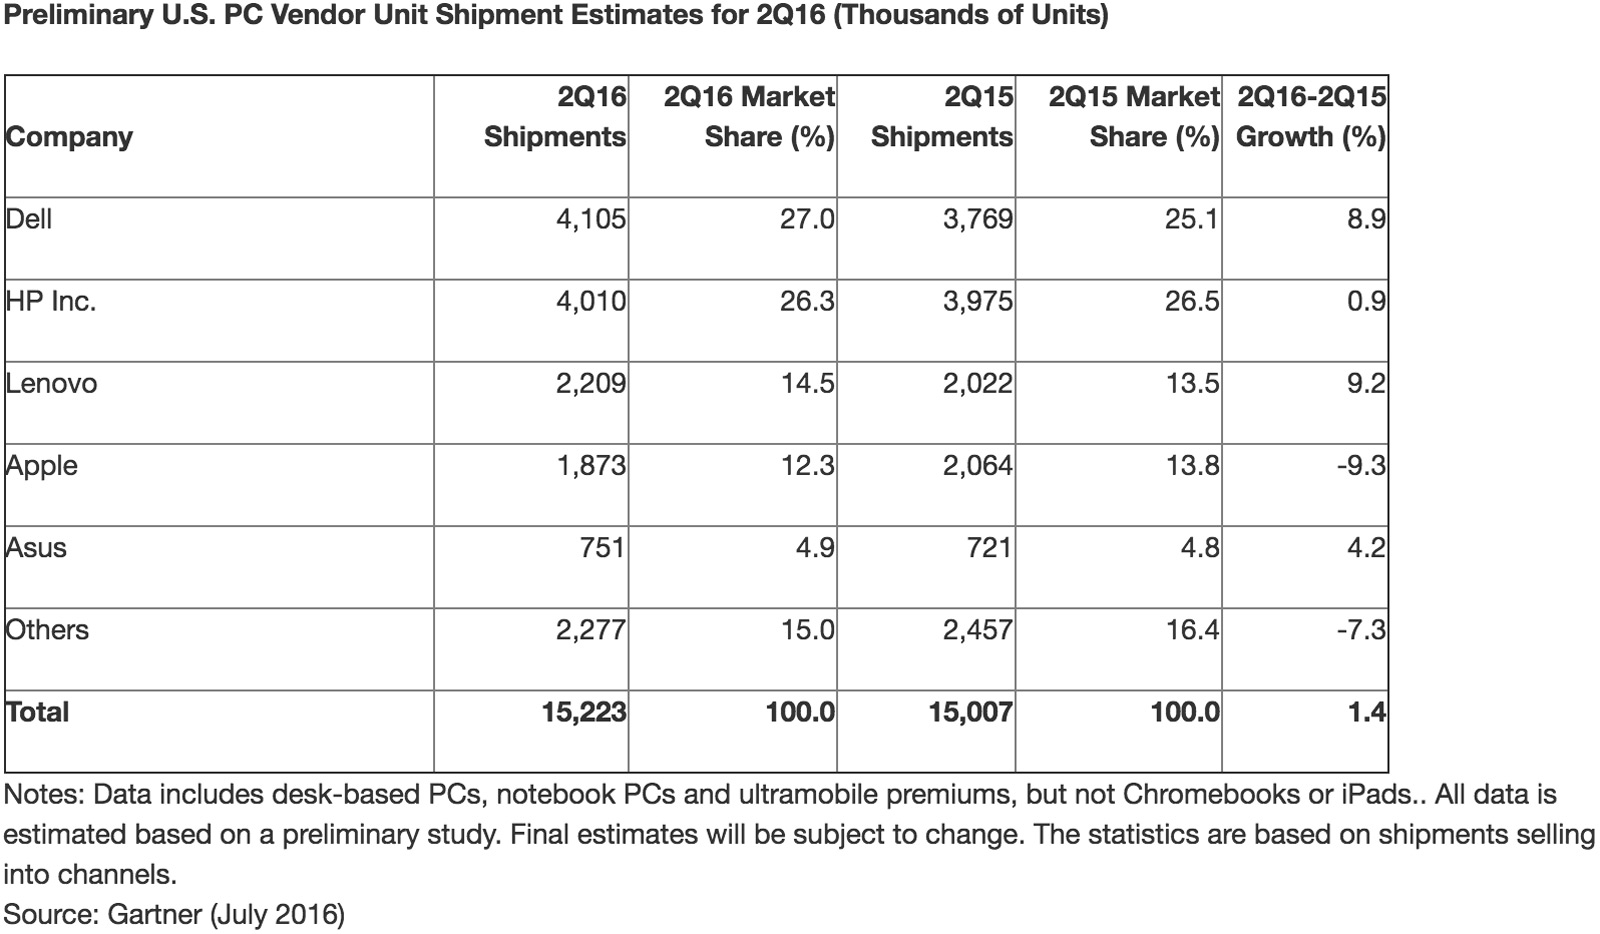 Gartner's US PC market share estimate for Q2 2016